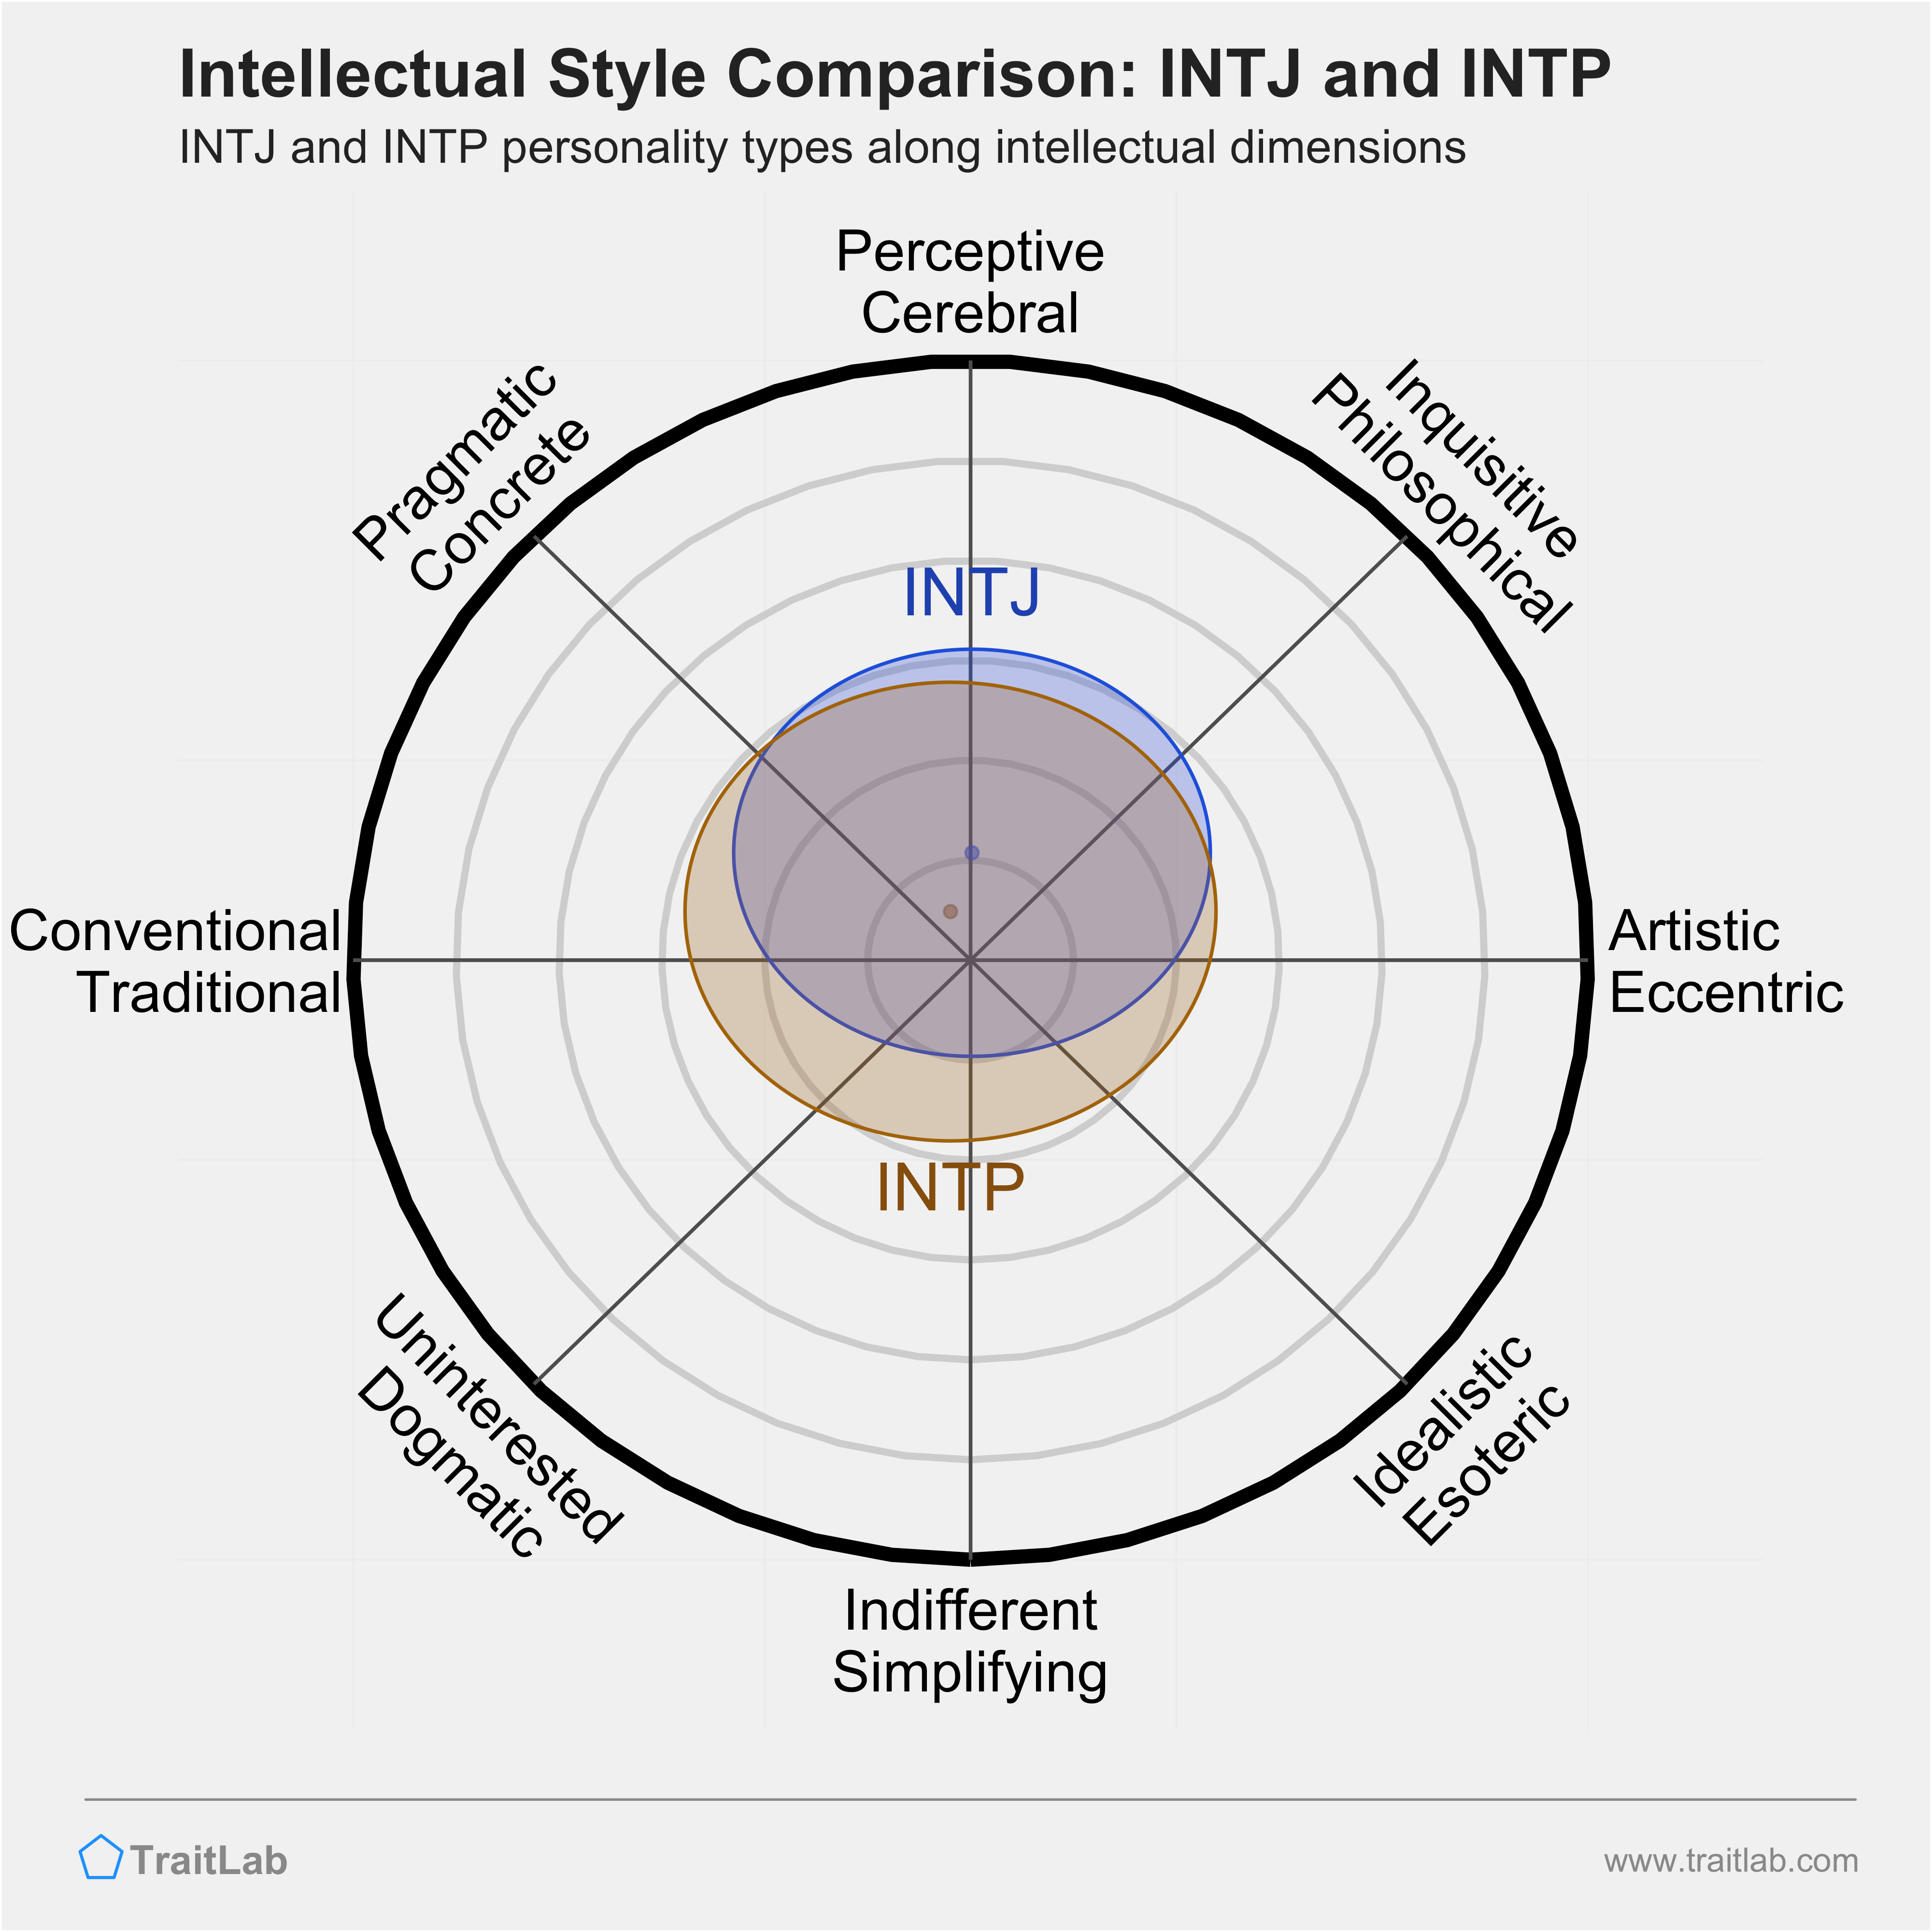 INTJ and INTP comparison across intellectual dimensions